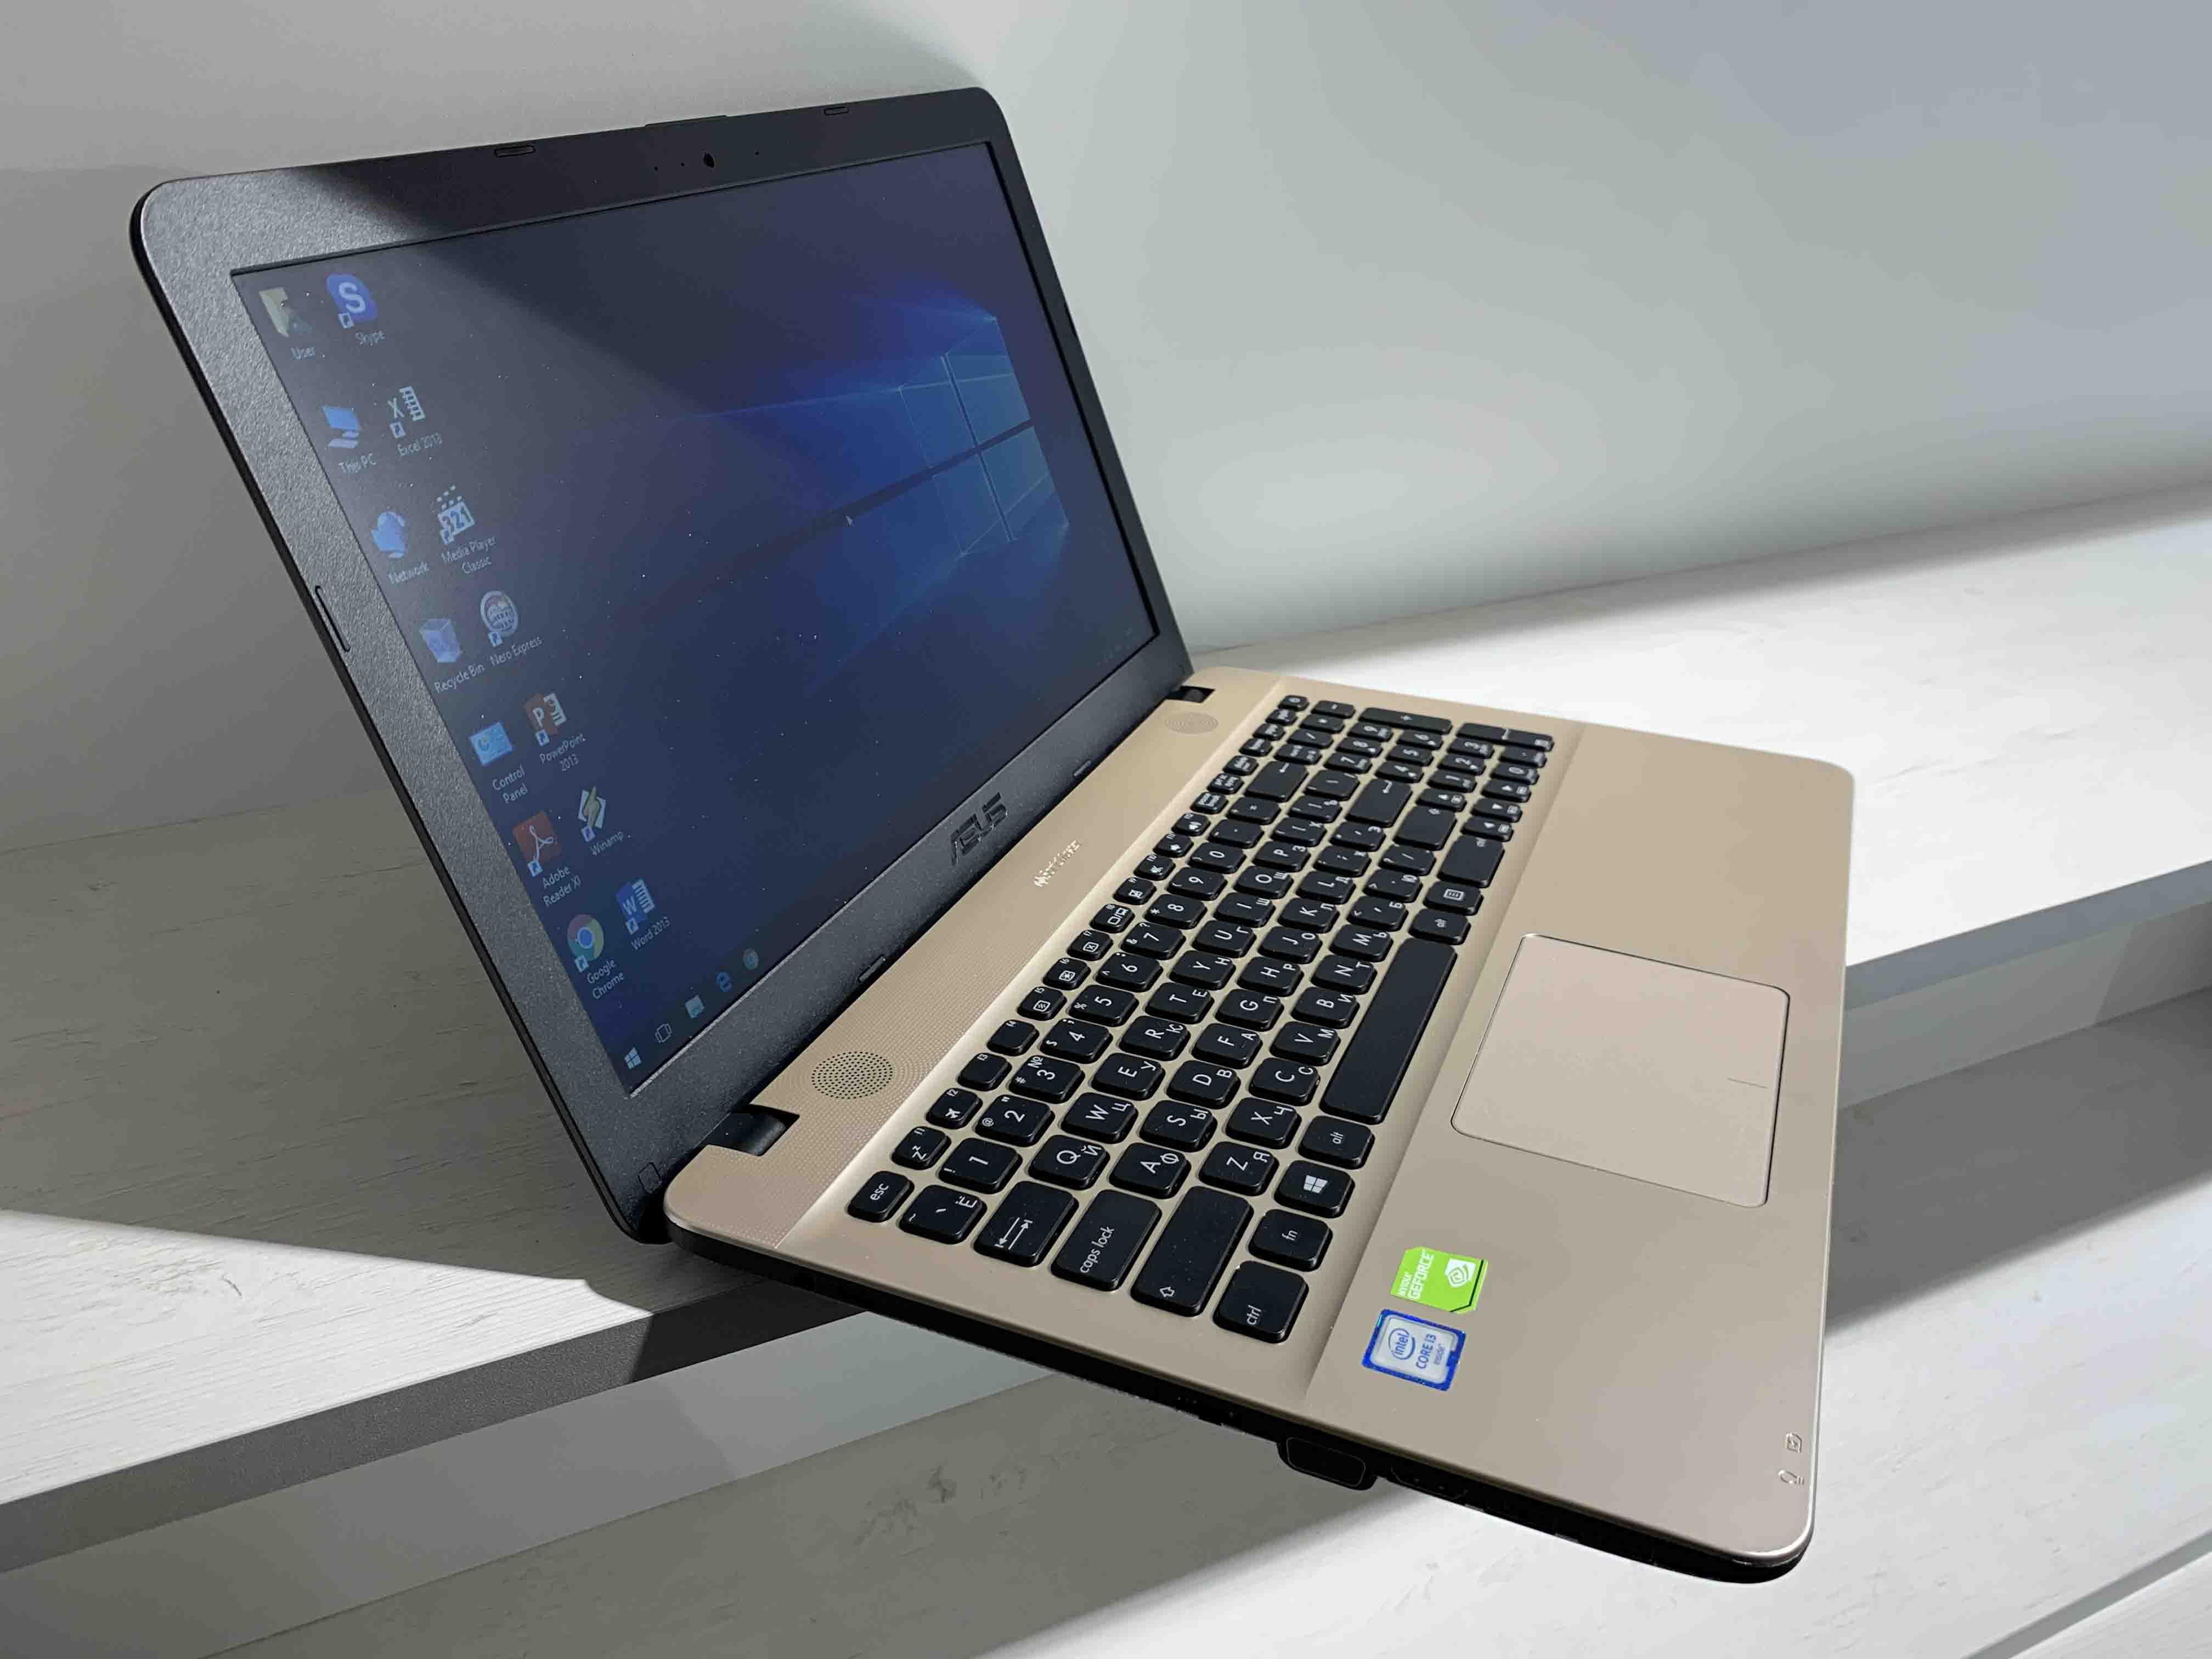 Купить Ноутбук Asus X541u